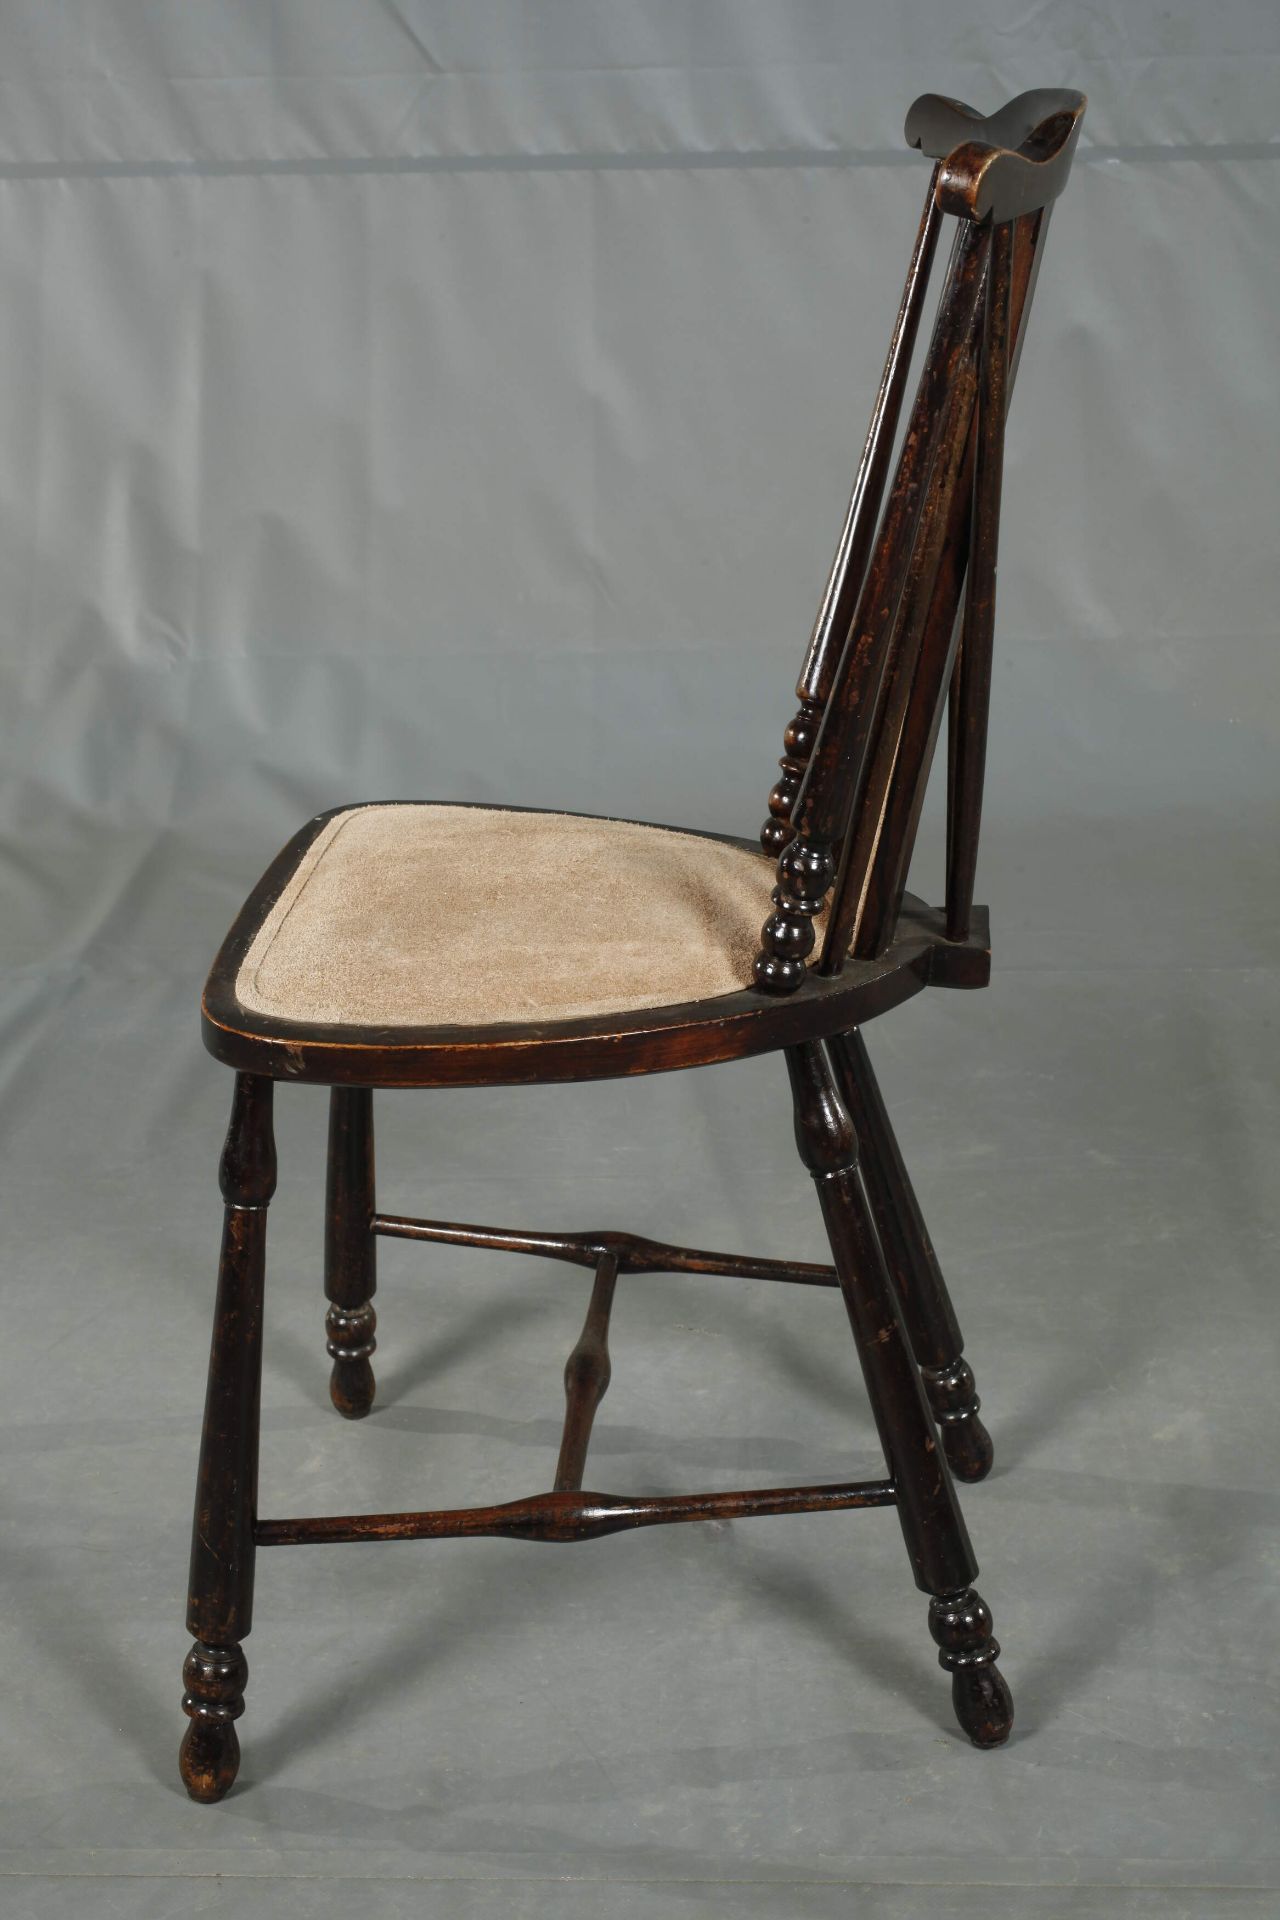 Fan-Back Windsor Chair - Image 5 of 6